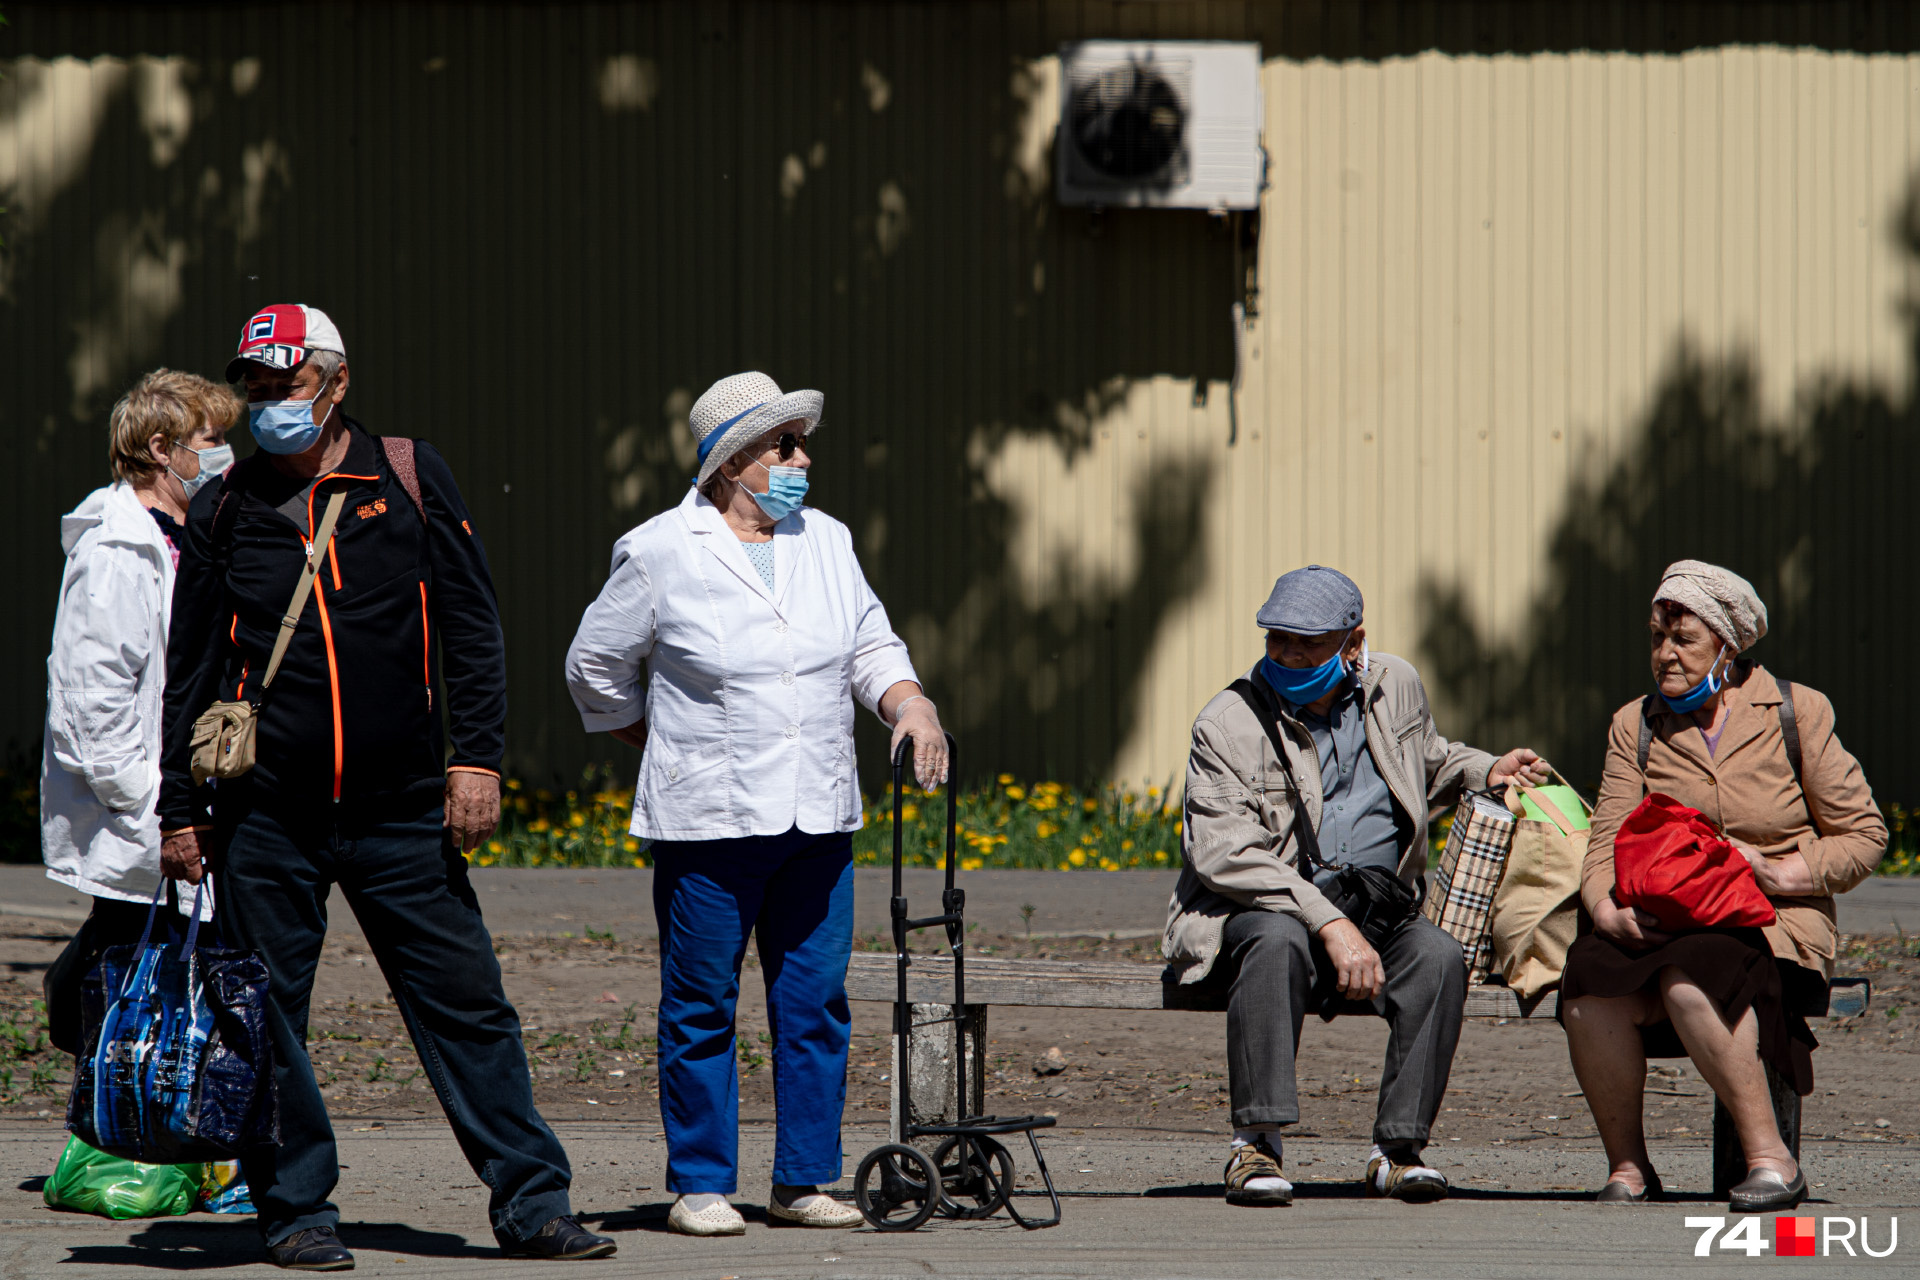 Пенсионеры потеряли от 500 до 1000 рублей из-за «технических» поправок в региональные стандарты по оплате ЖКХ